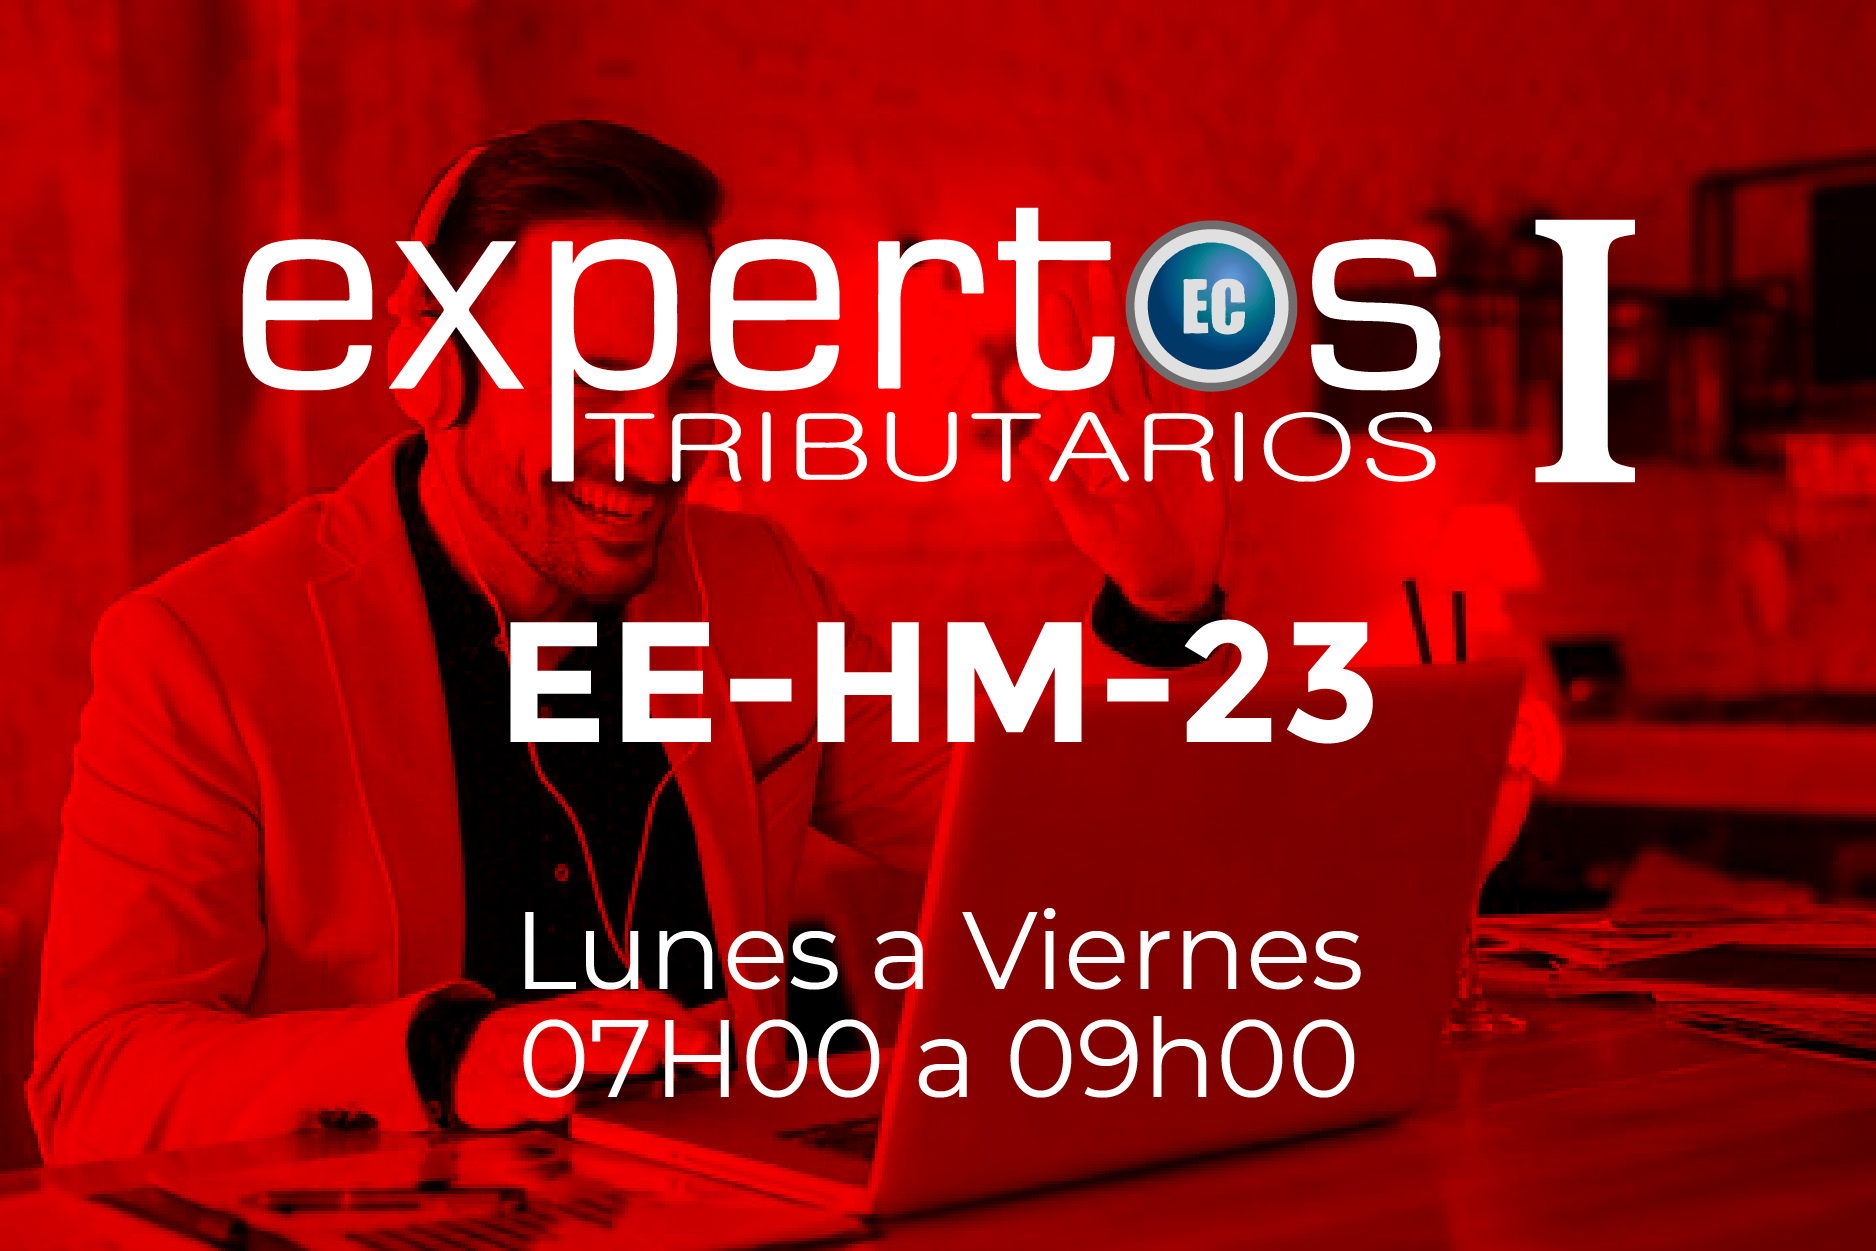 23 - EXPERTOS TRIBUTARIOS - LUNES A VIERNES - 07:00 A 09:00